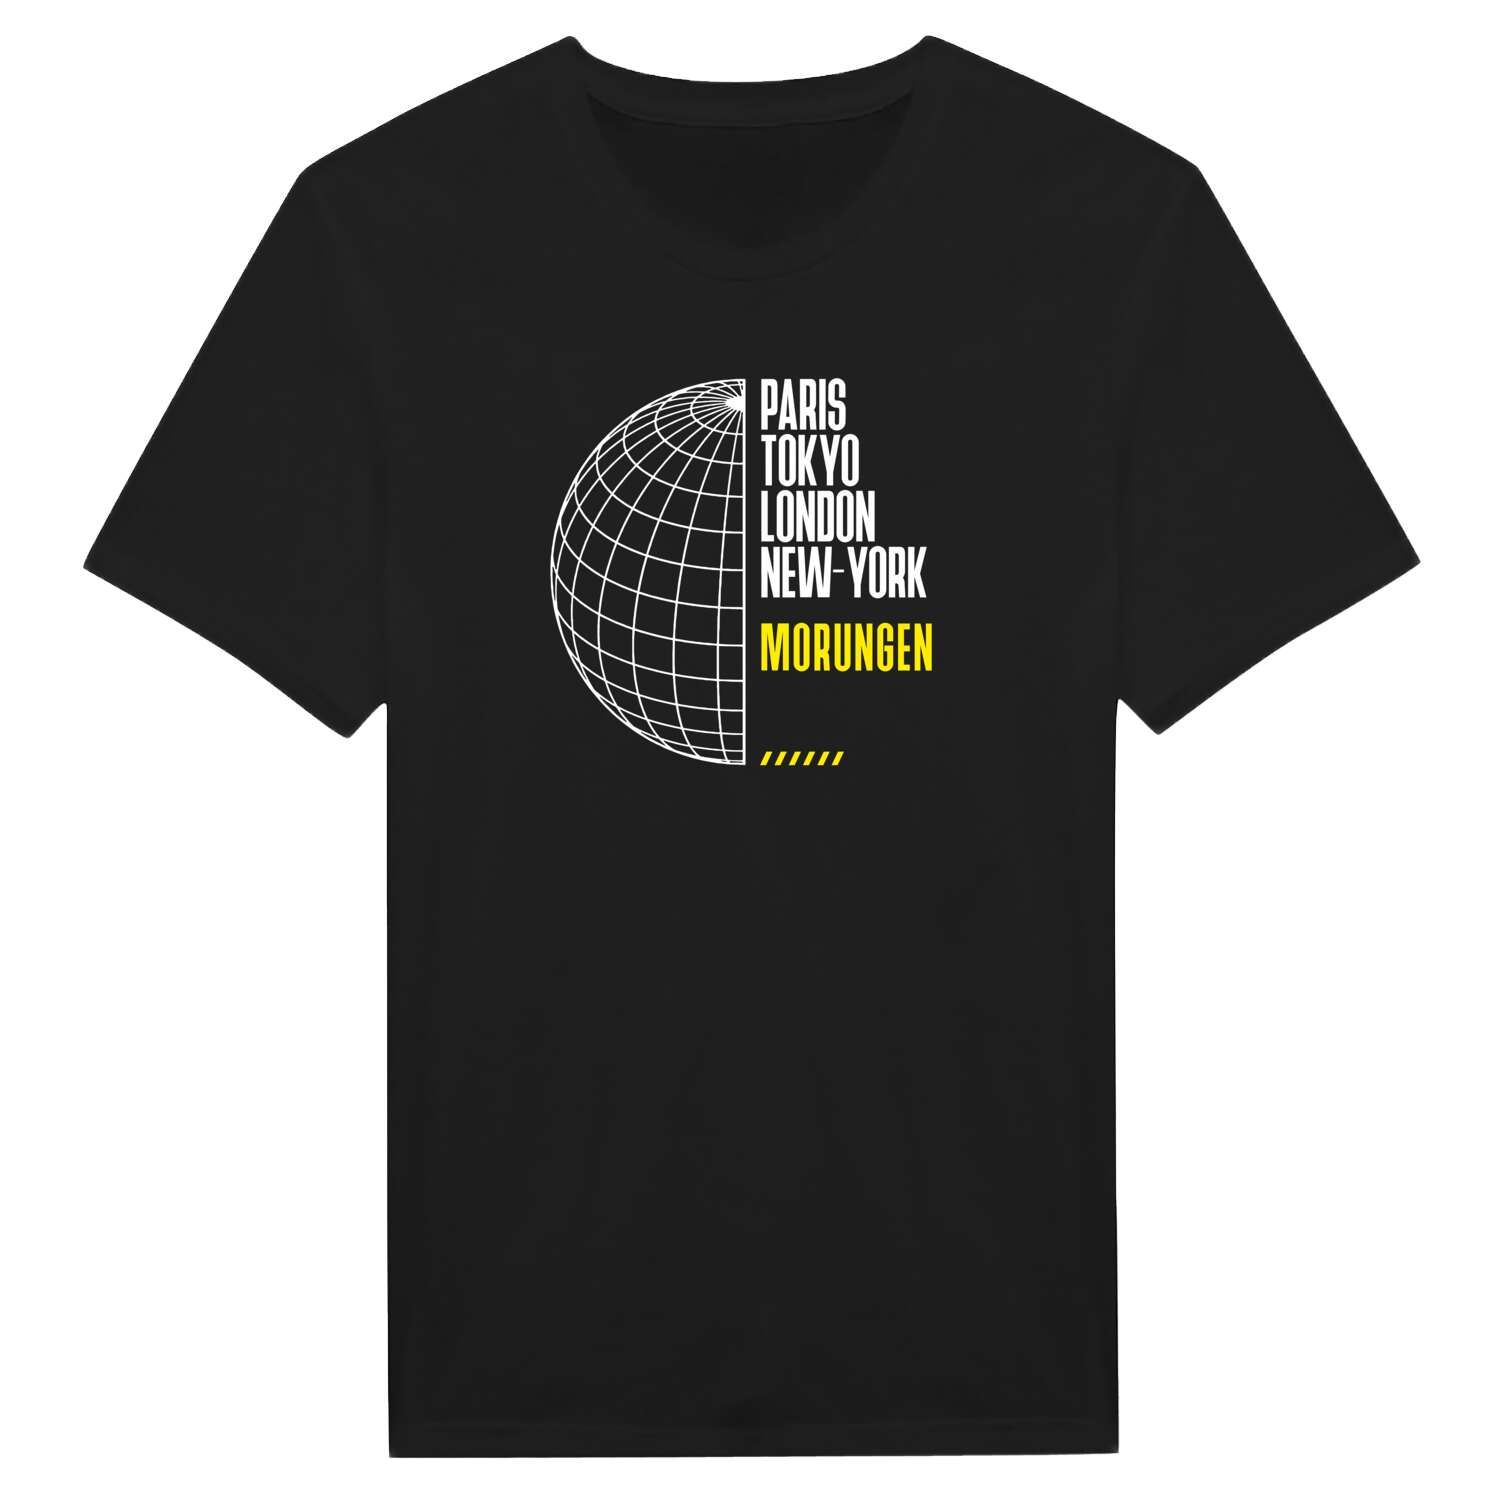 Morungen T-Shirt »Paris Tokyo London«